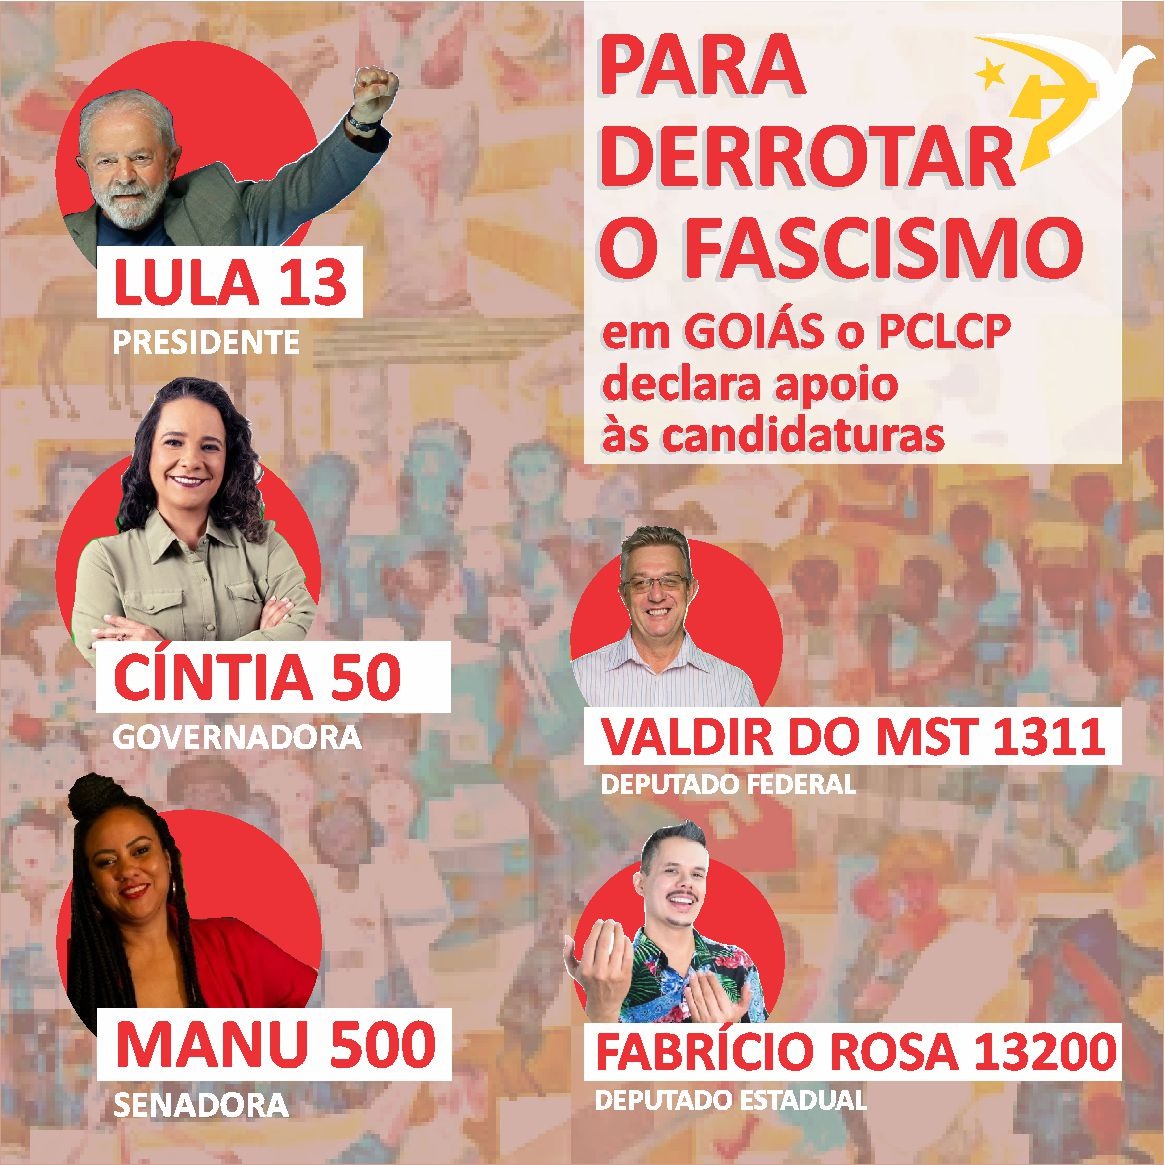 Para derrotar o fascismo em Goiás